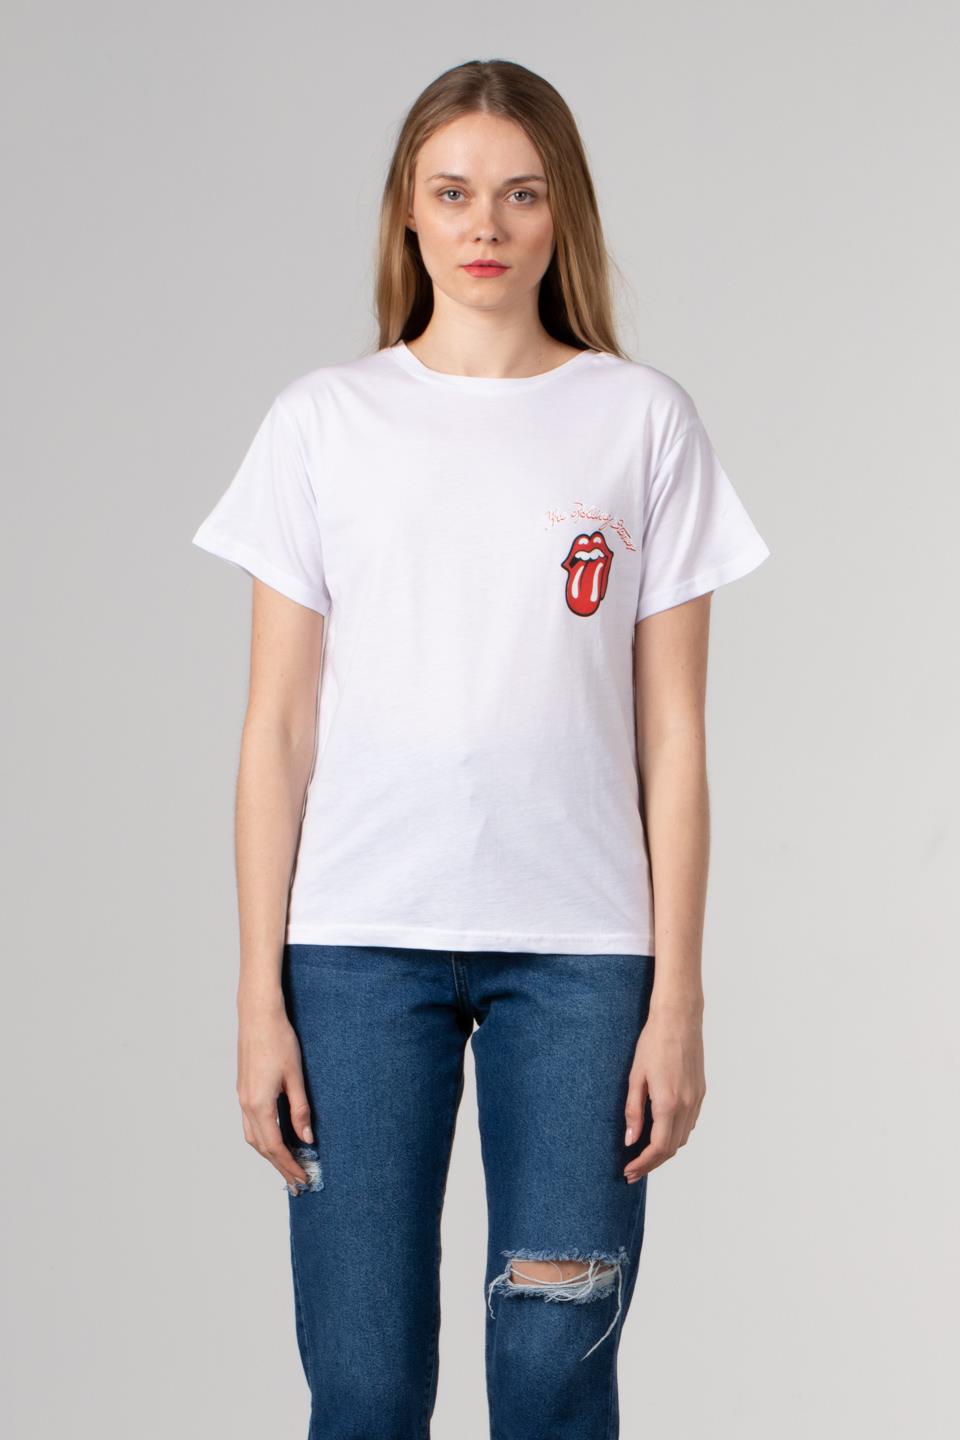 Dil baskılı basıc t-shirt-1003 Beyaz/Kırmızı